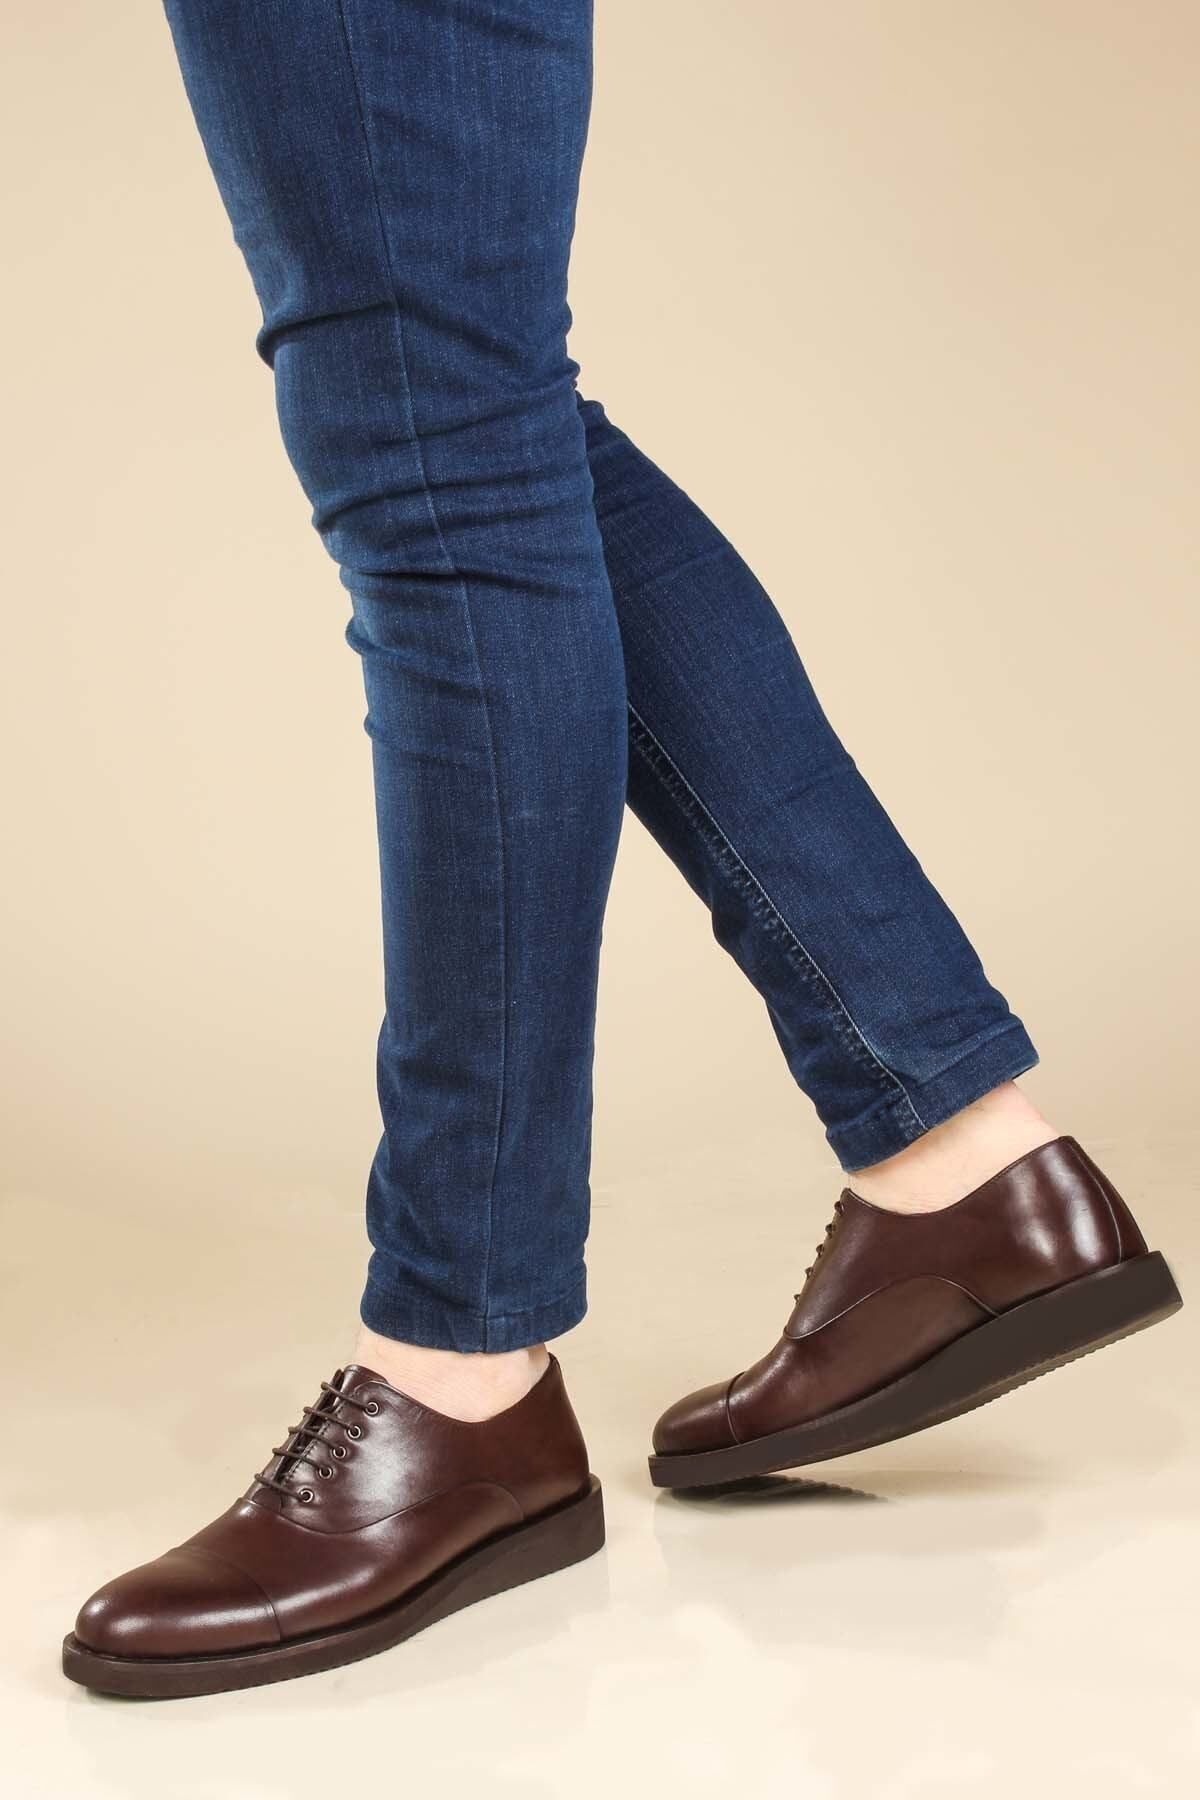 Fast Step Klasik Ayakkabı Hakiki Deri Kahve Erkek Oxford Ayakkabı 822ma052